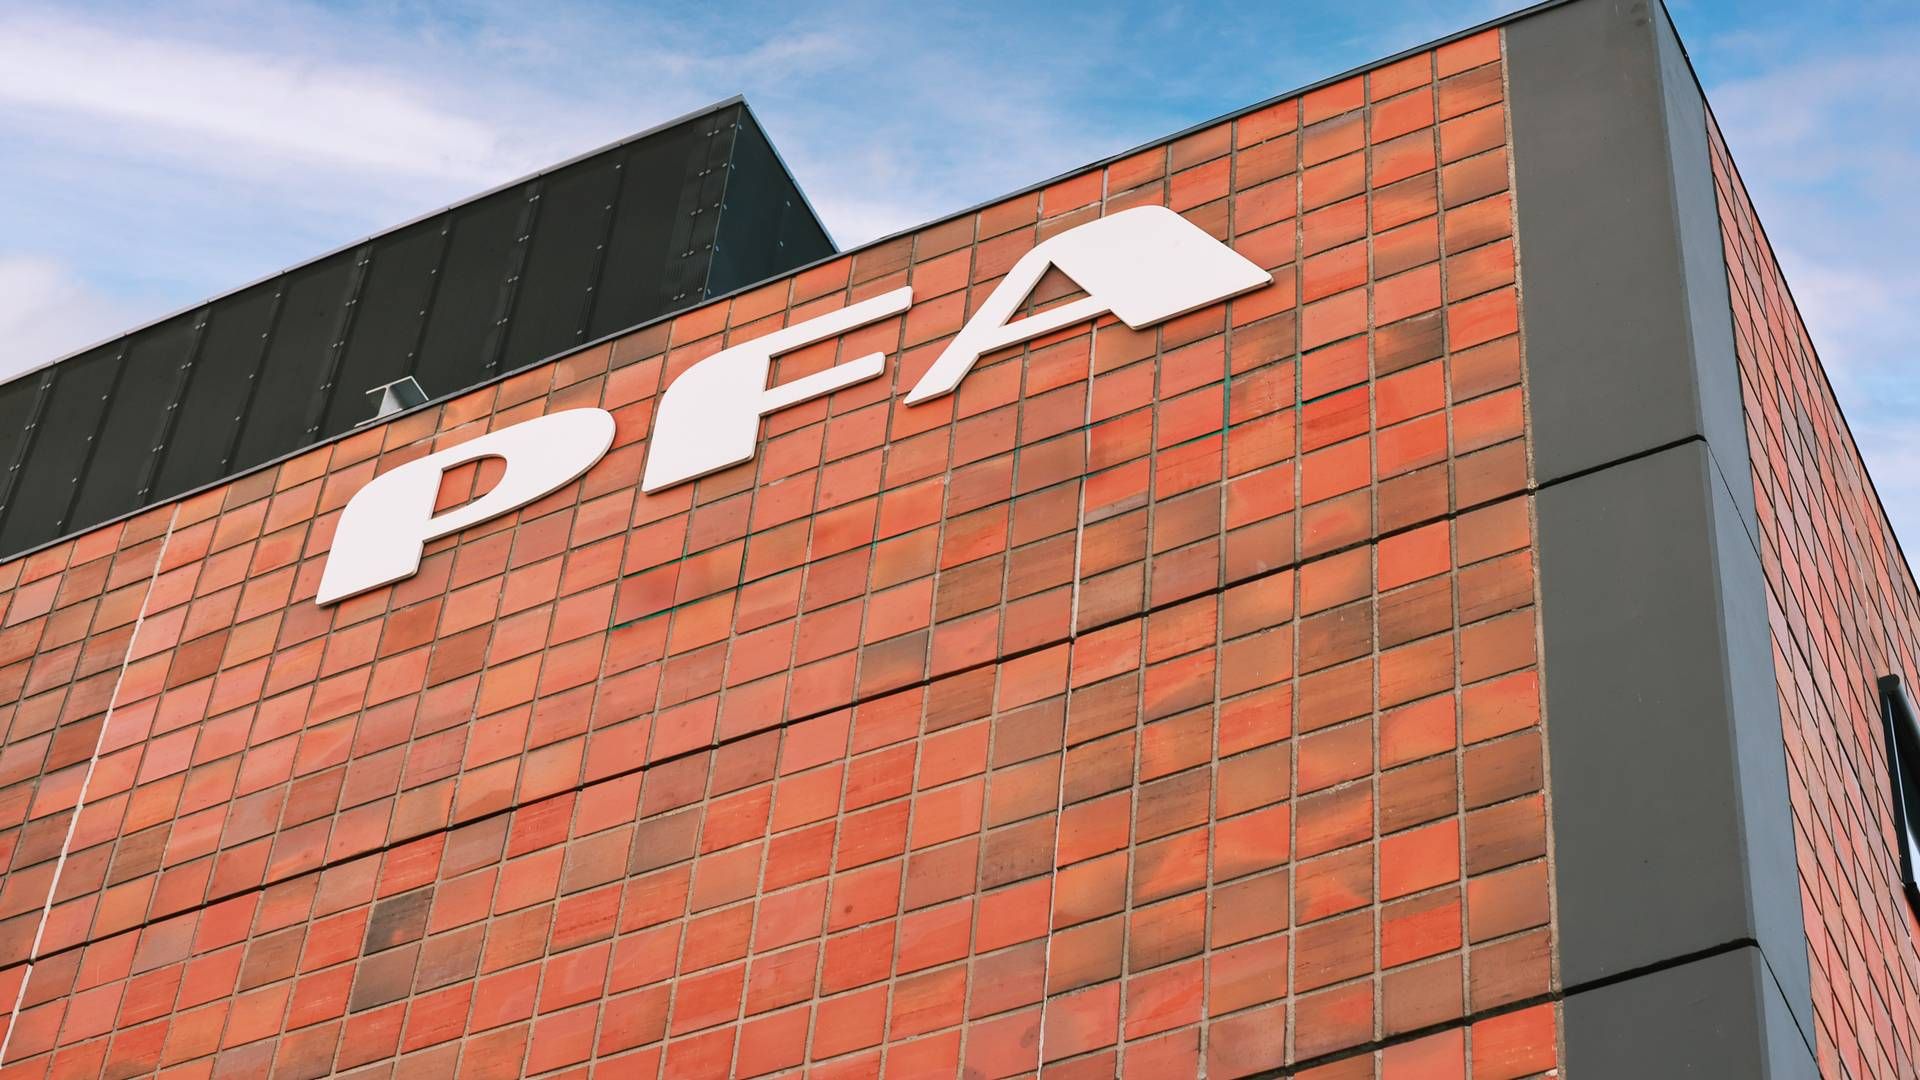 PFA er landets største kommercielle pensionsselskab. | Foto: Pfa